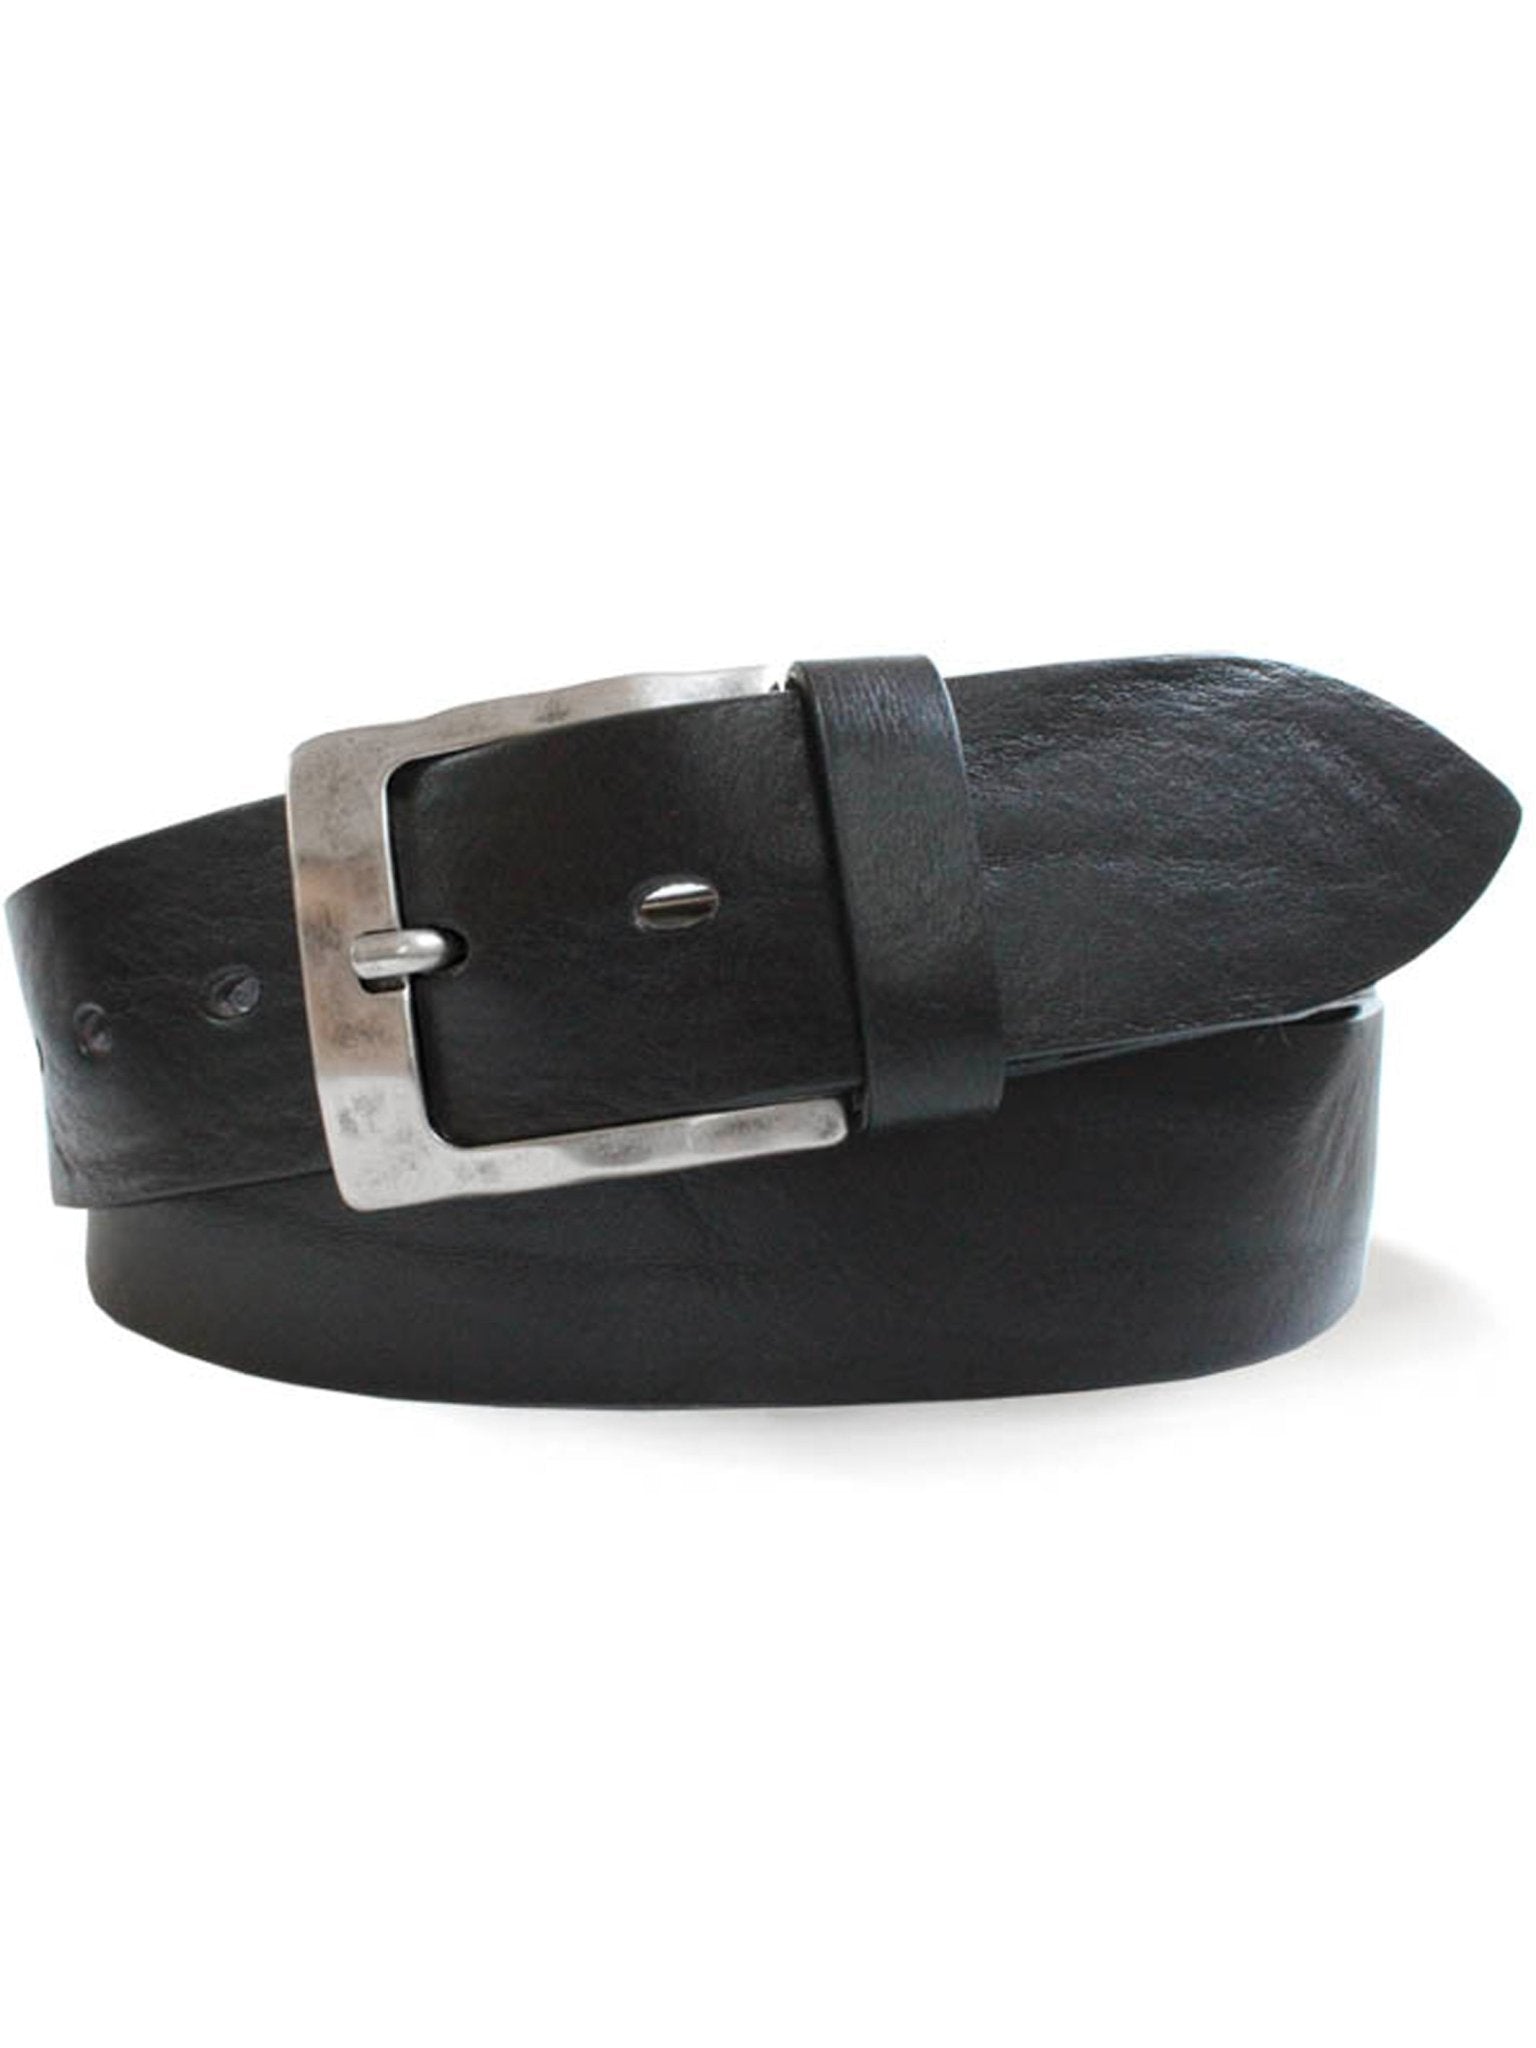 4elementsclothingRobert CharlesRobert Charles Belts - 6307 Burnished Mens Leather Belt - 40mm leather width - Made in ItalyBelts6307/BLACK/S